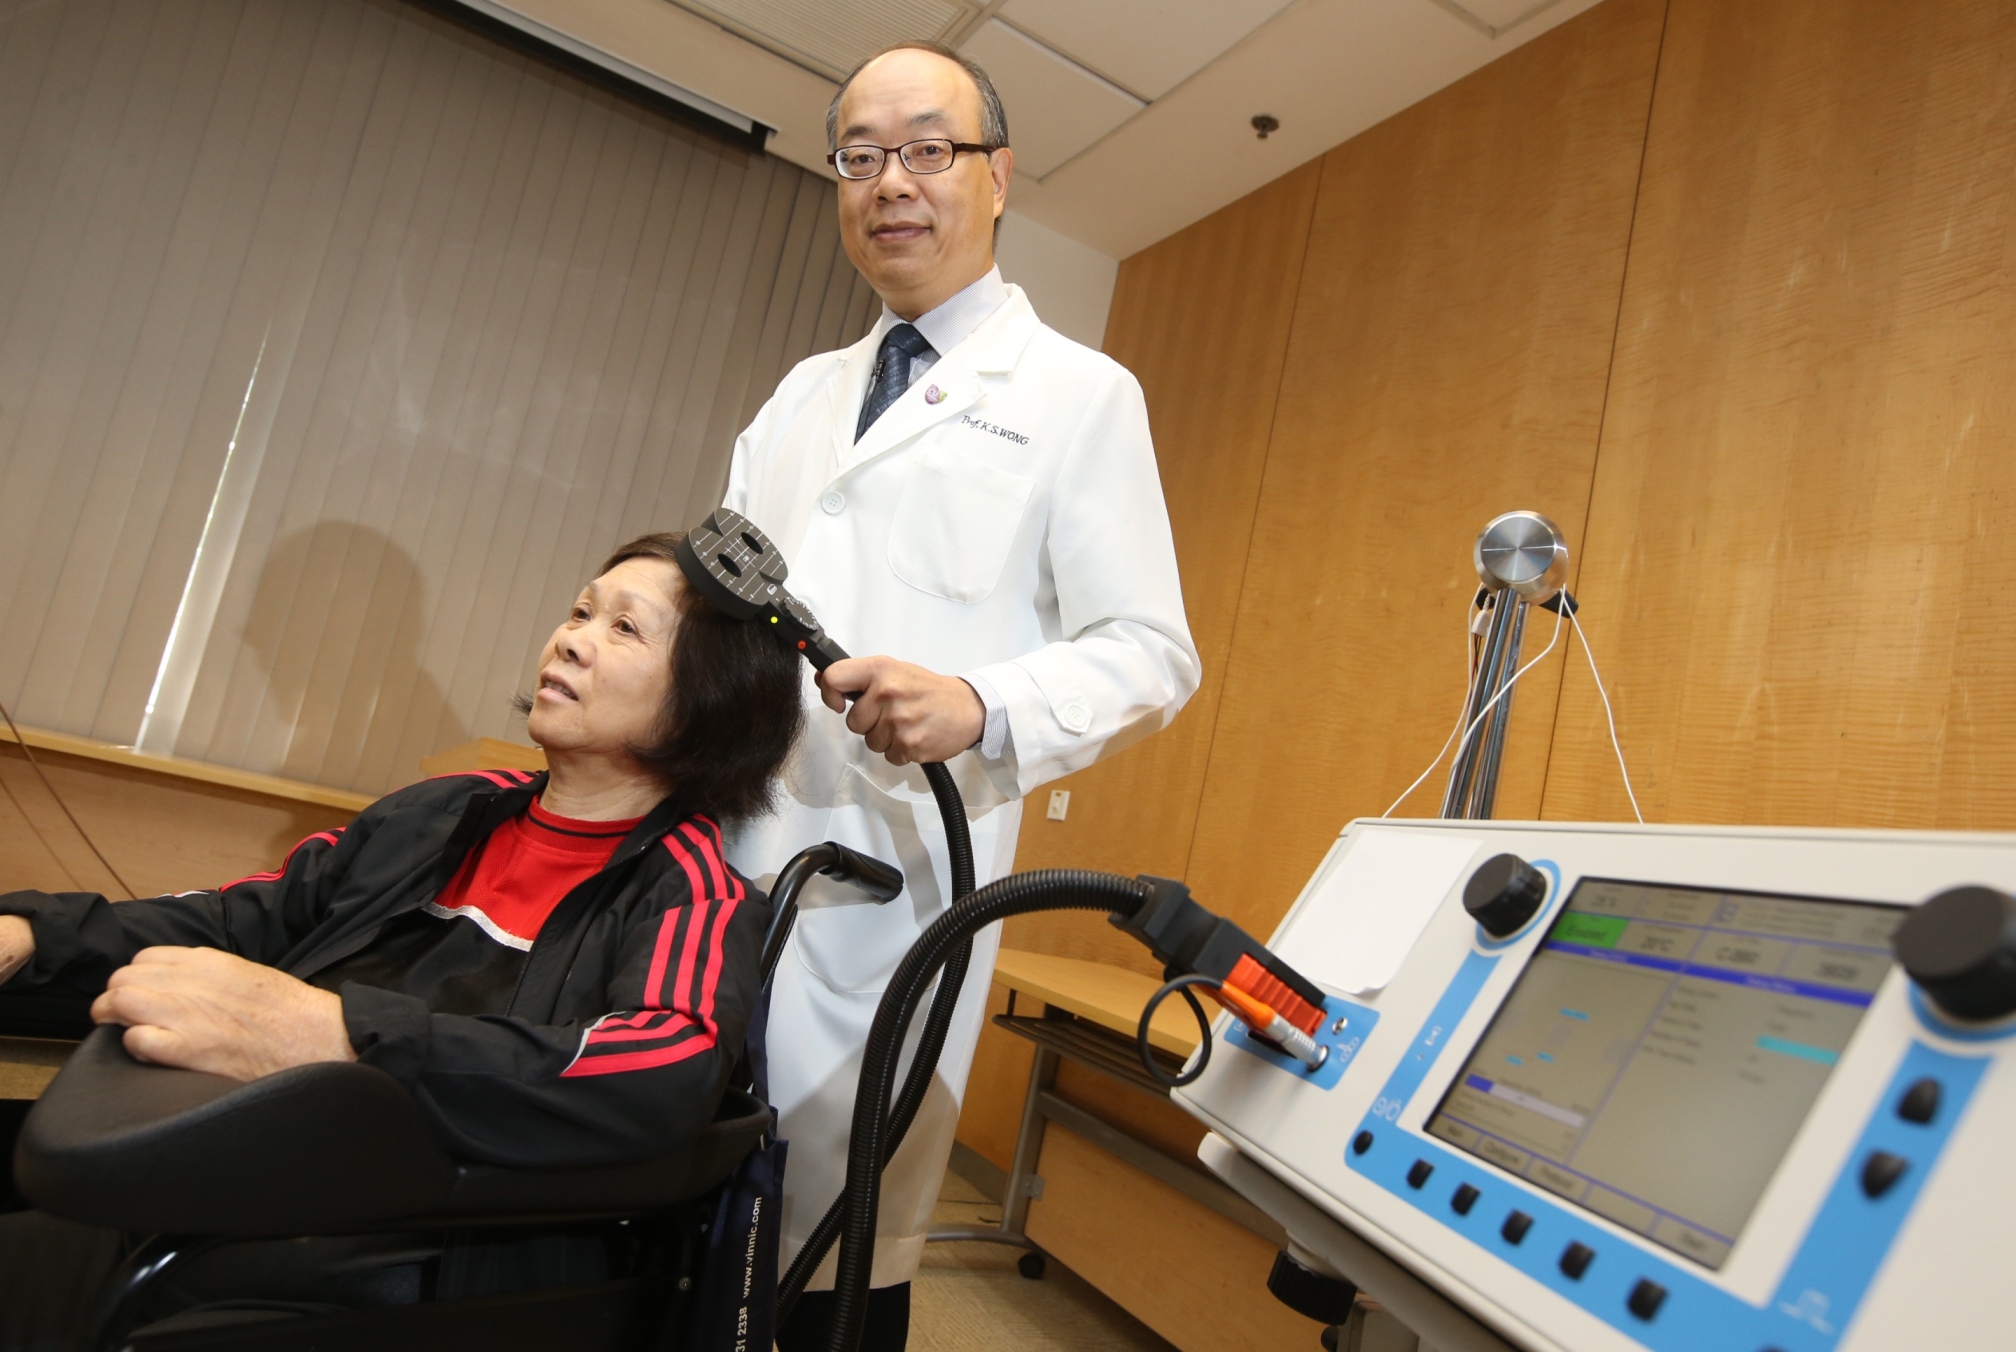 黃家星教授及團隊創「脈磁激法」，為全球首個結合物理治療、「體外反搏法」及「爆發式磁刺激」的療法，幫助中風患者復修腦部功能及促進機能痊癒。